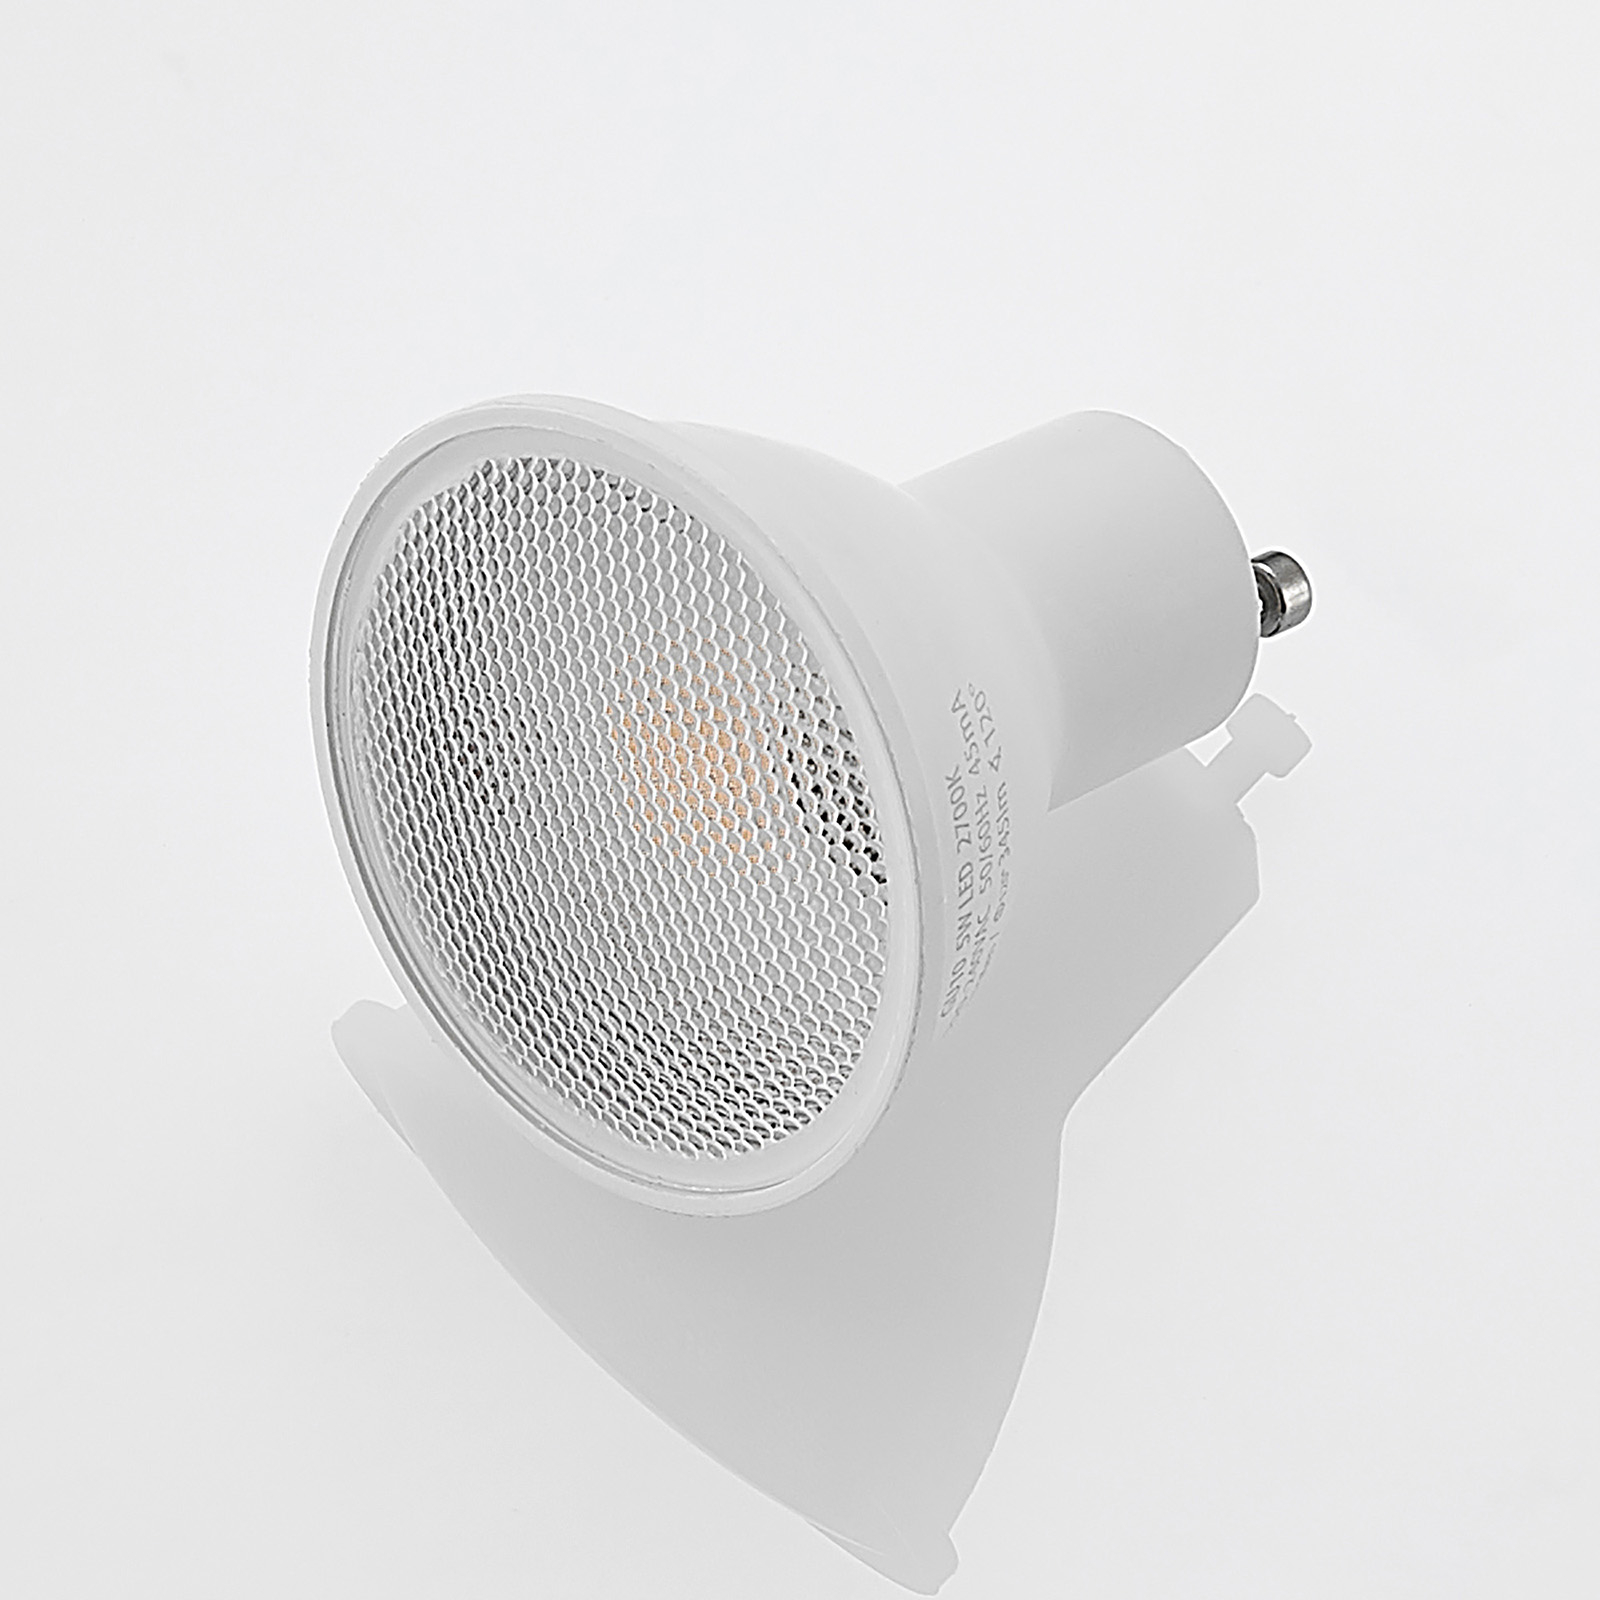 ELC réflecteur LED GU10 5 W lot de 10 2 700 K 120°